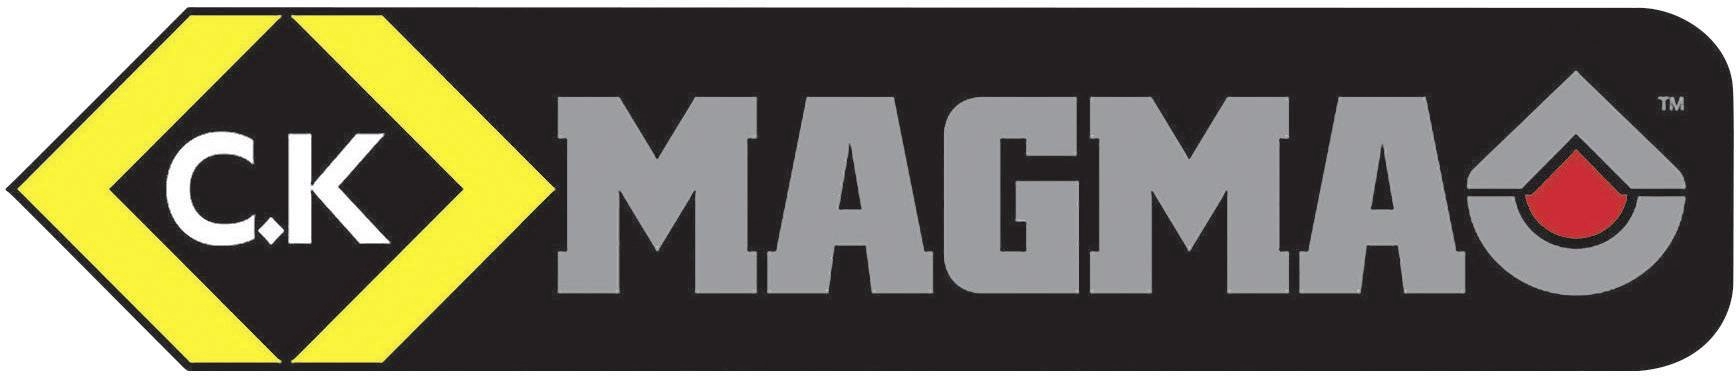 C.K Magma logo